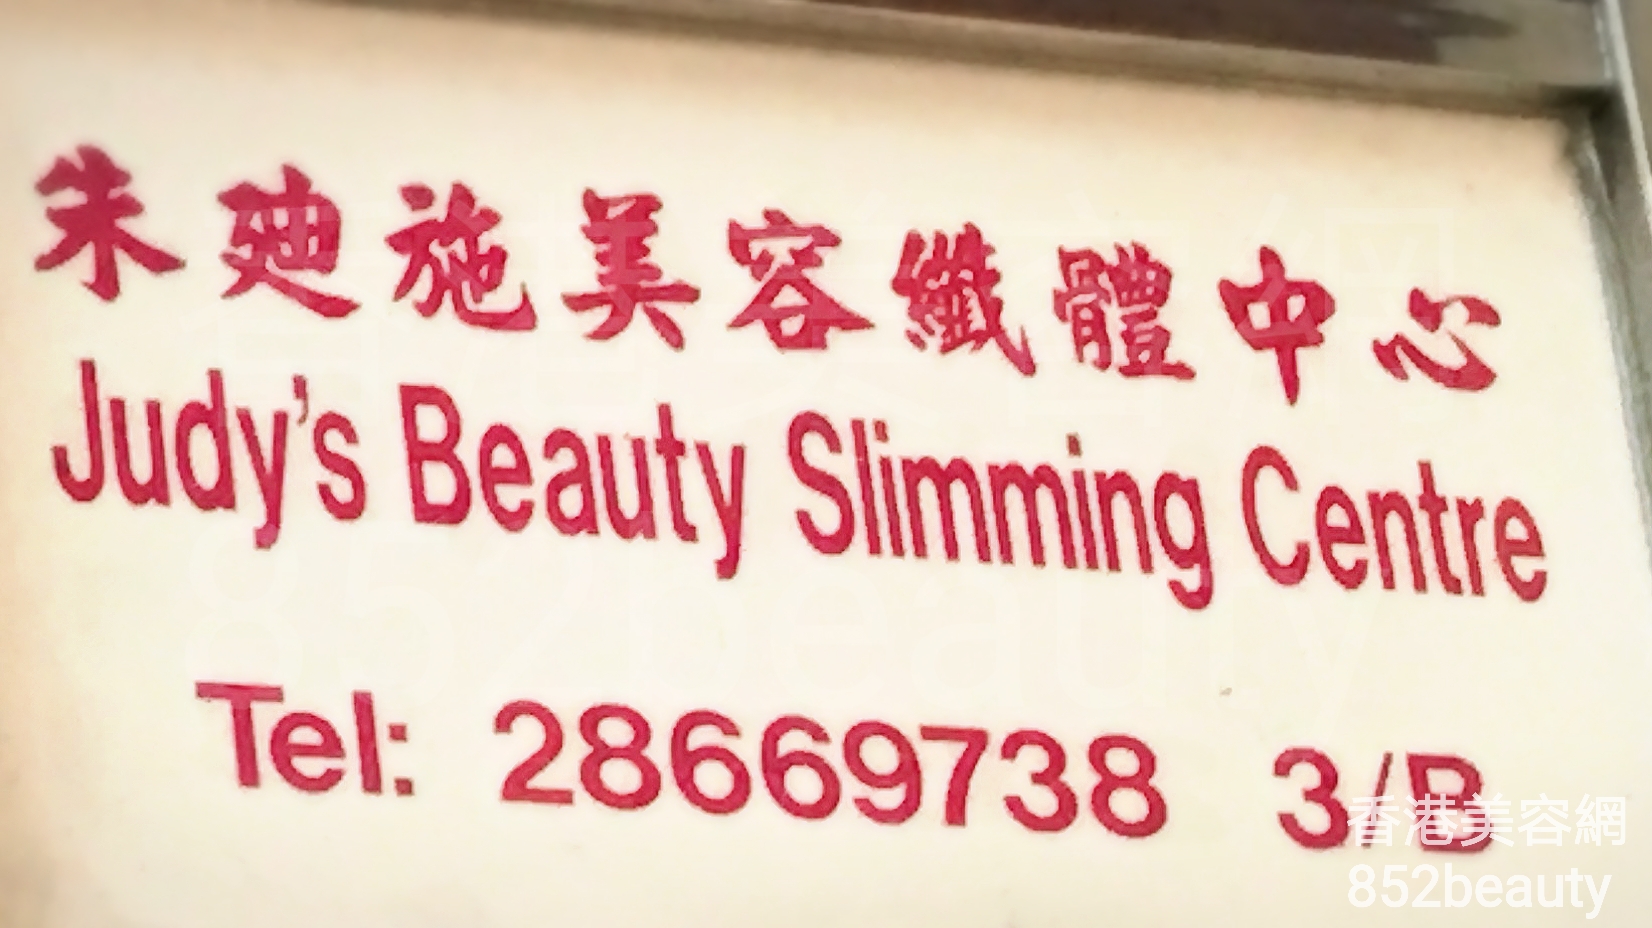 香港美容網 Hong Kong Beauty Salon 美容院 / 美容師: 朱廸施美容纖體中心 Judy\'s Beauty Slimming Centre